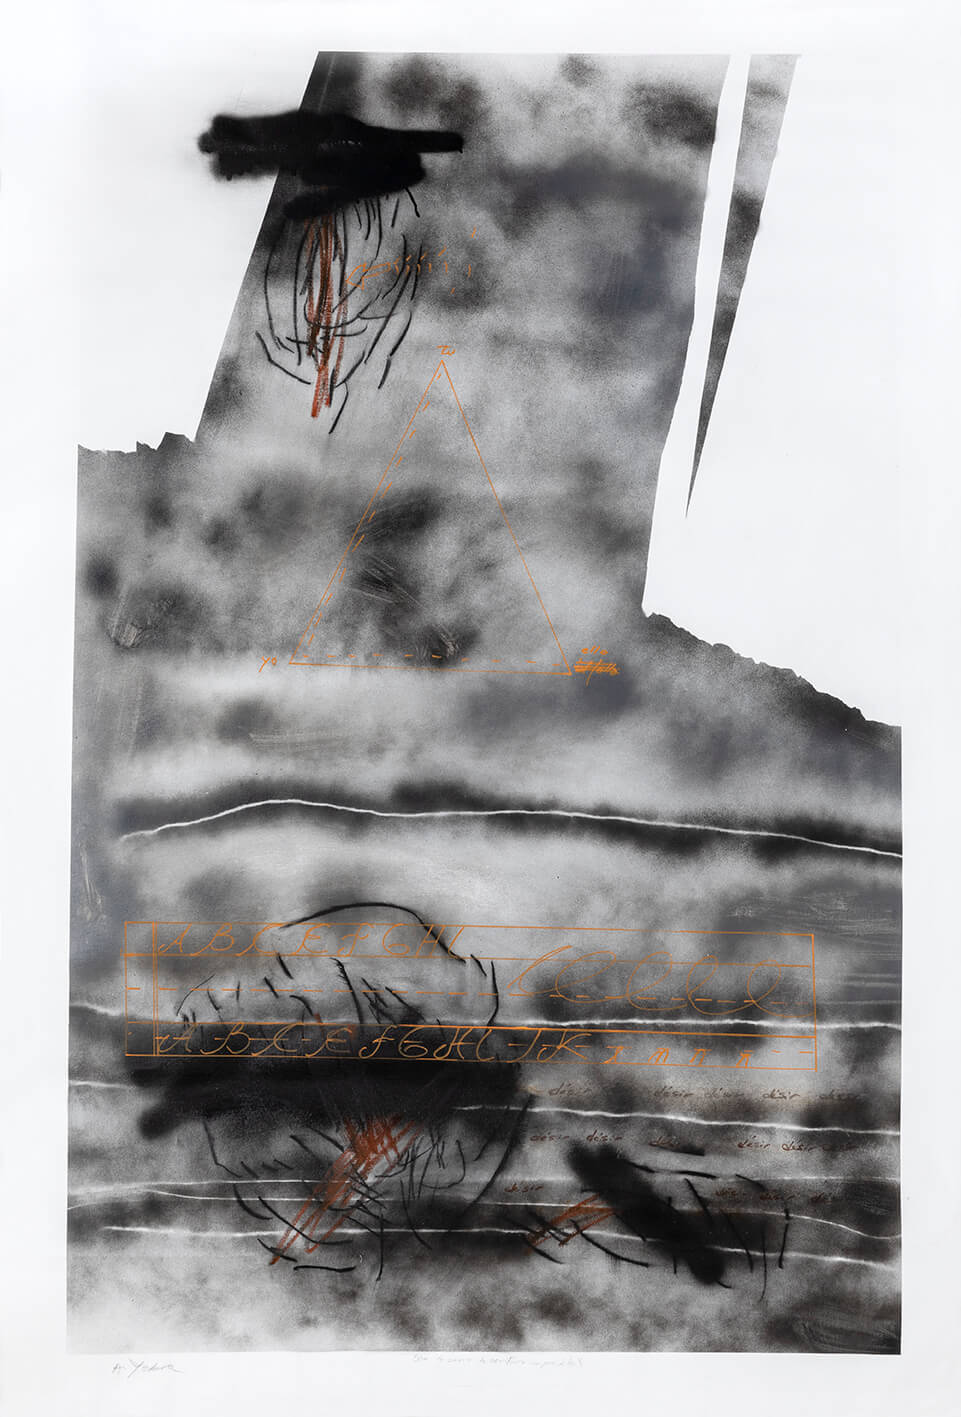 S/T acrylique, aérosol, fusain, pastel y encre de couler sur toile, 160 x 210 cm, 2020